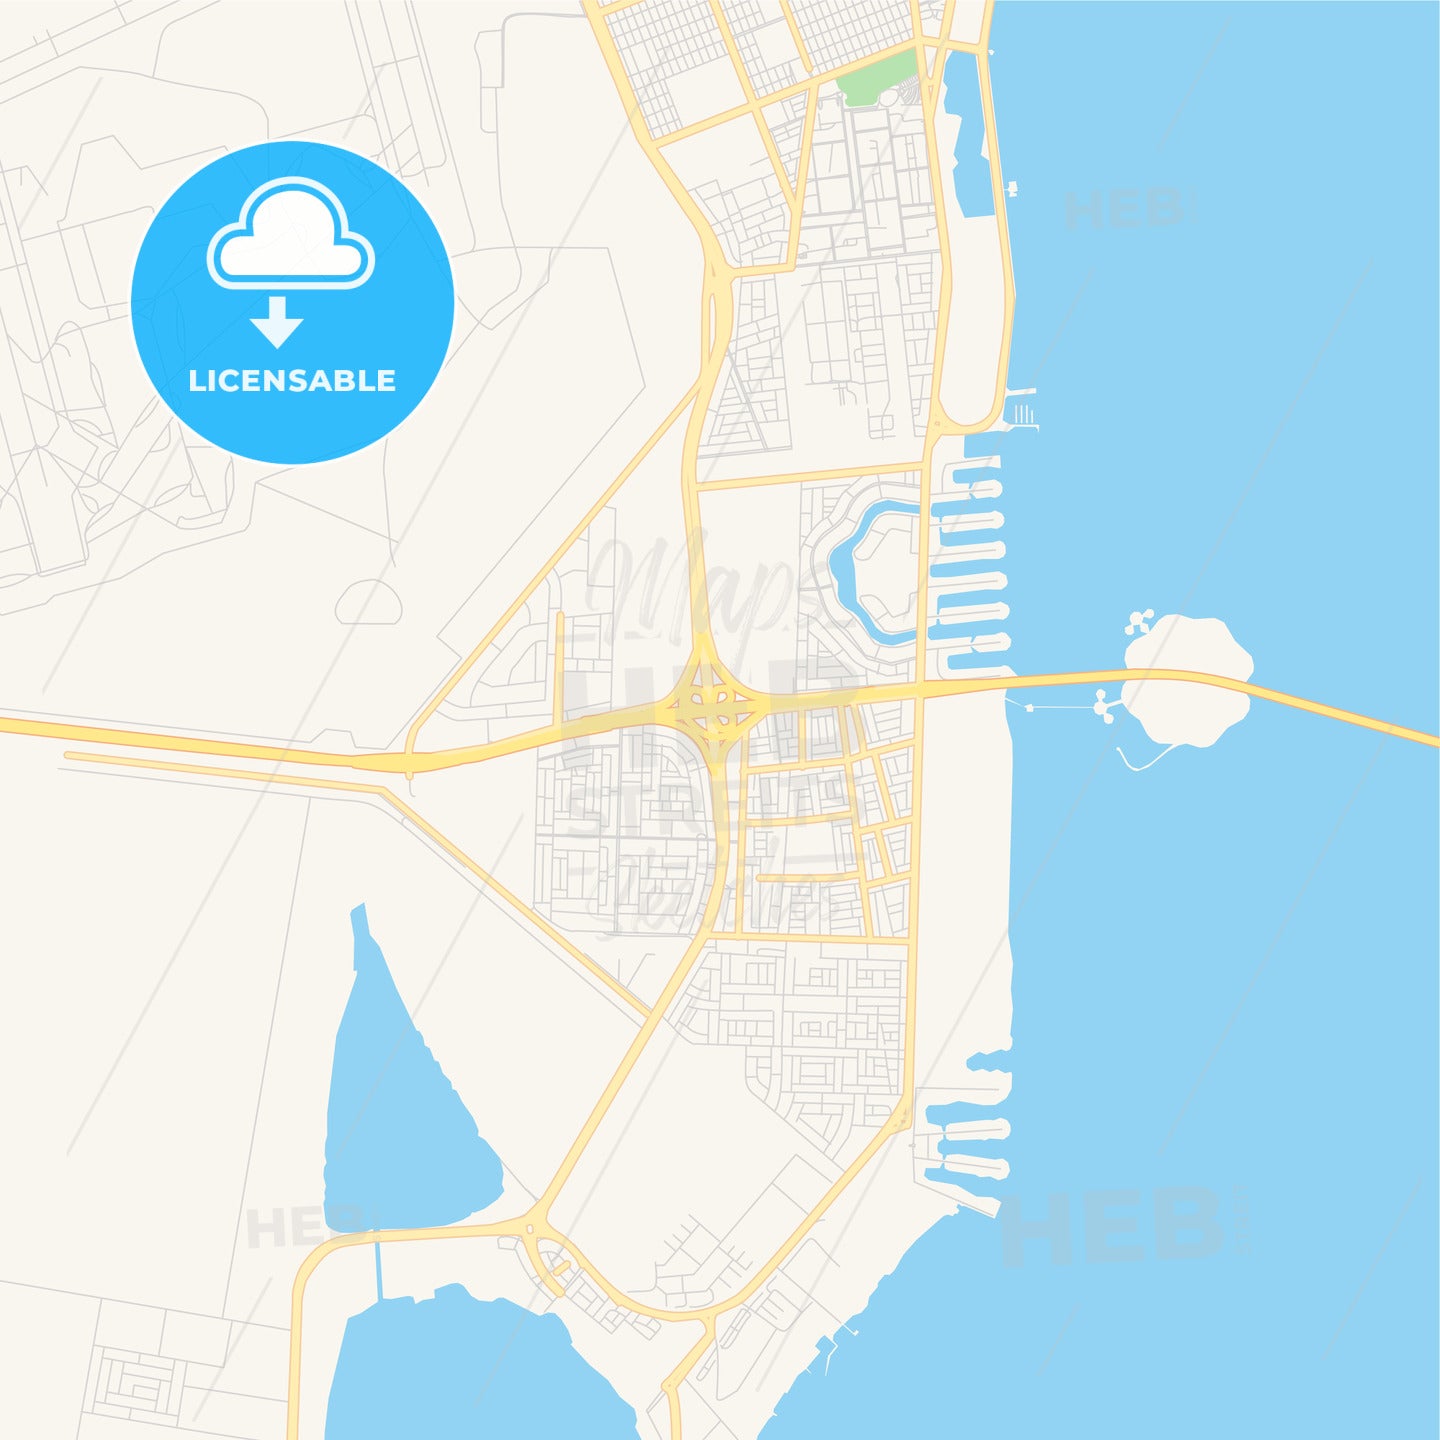 Printable street map of Khobar, Saudi Arabia